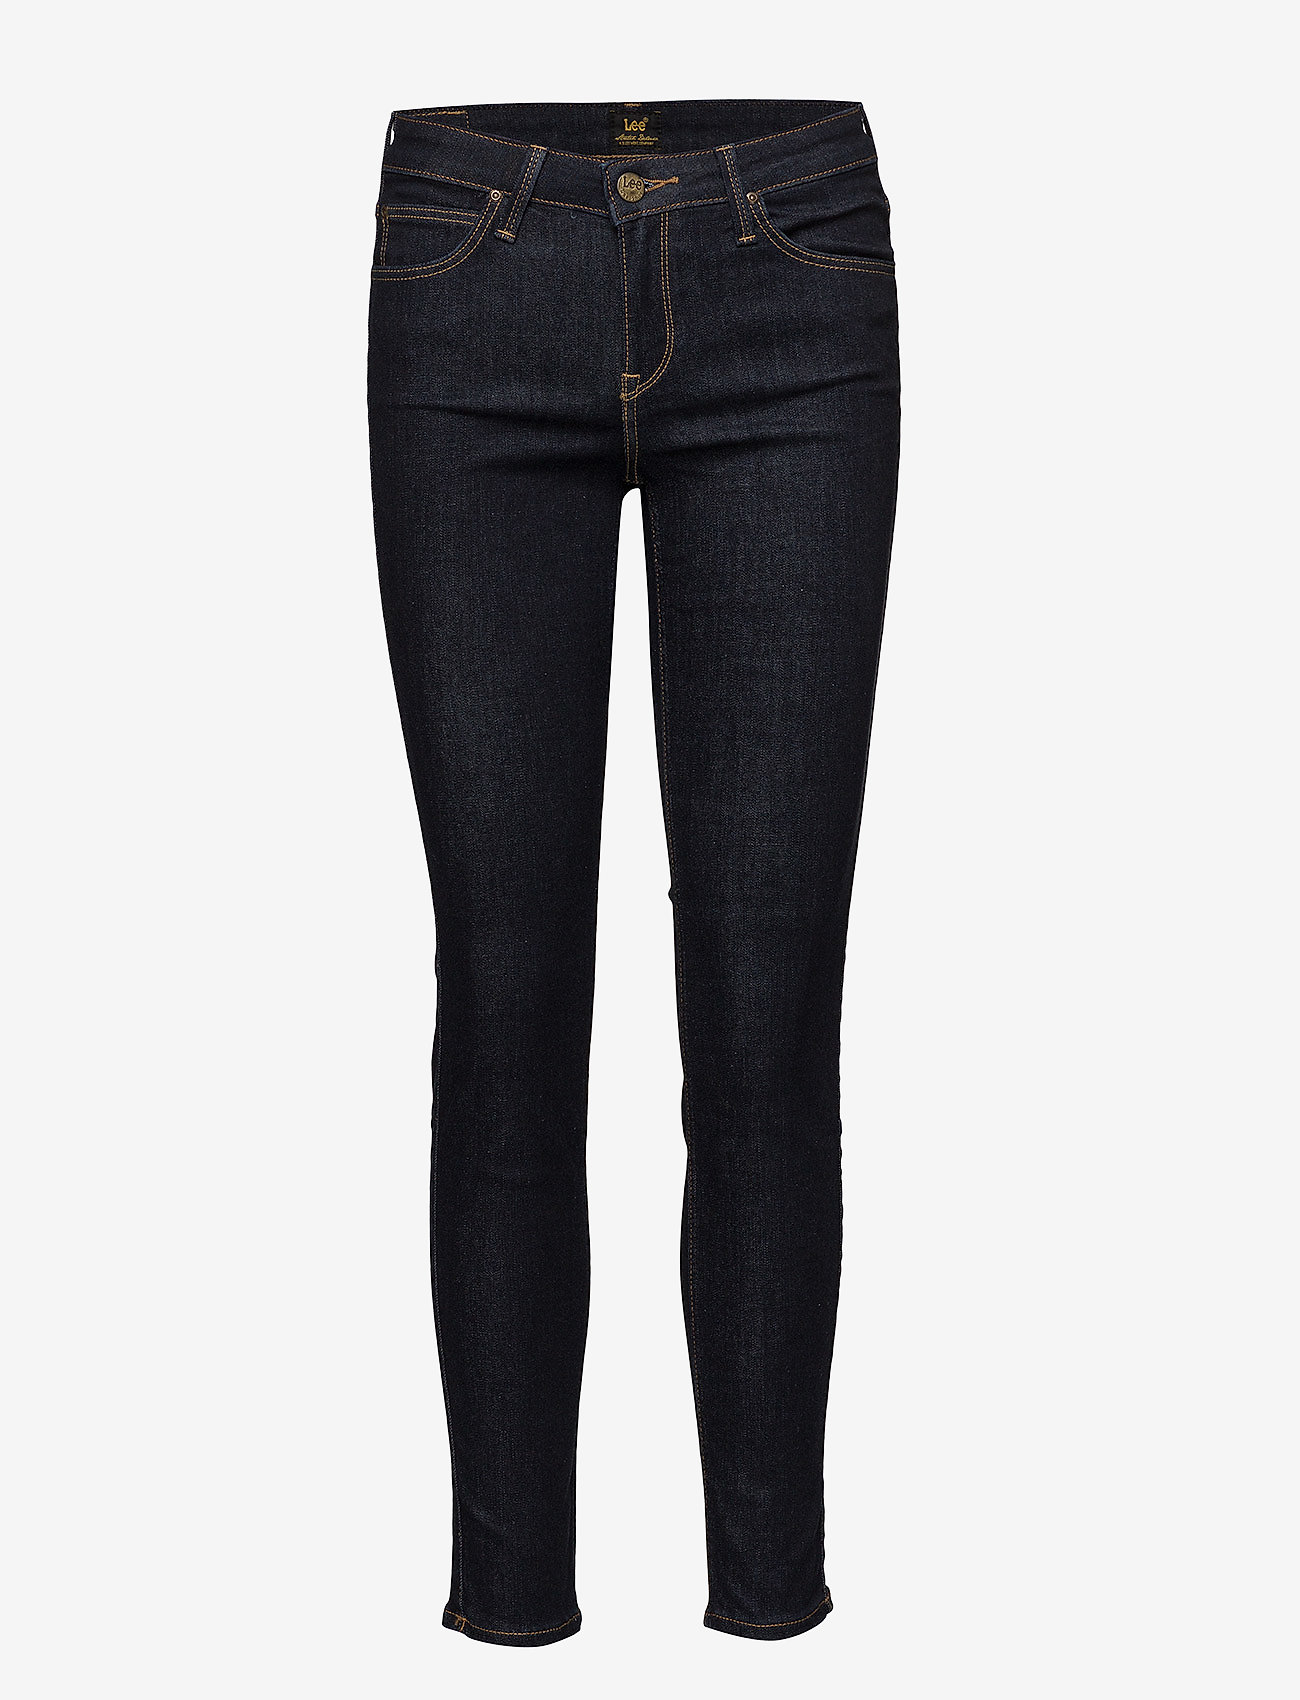 Lee Jeans - Scarlett - skinny jeans - rinse - 0